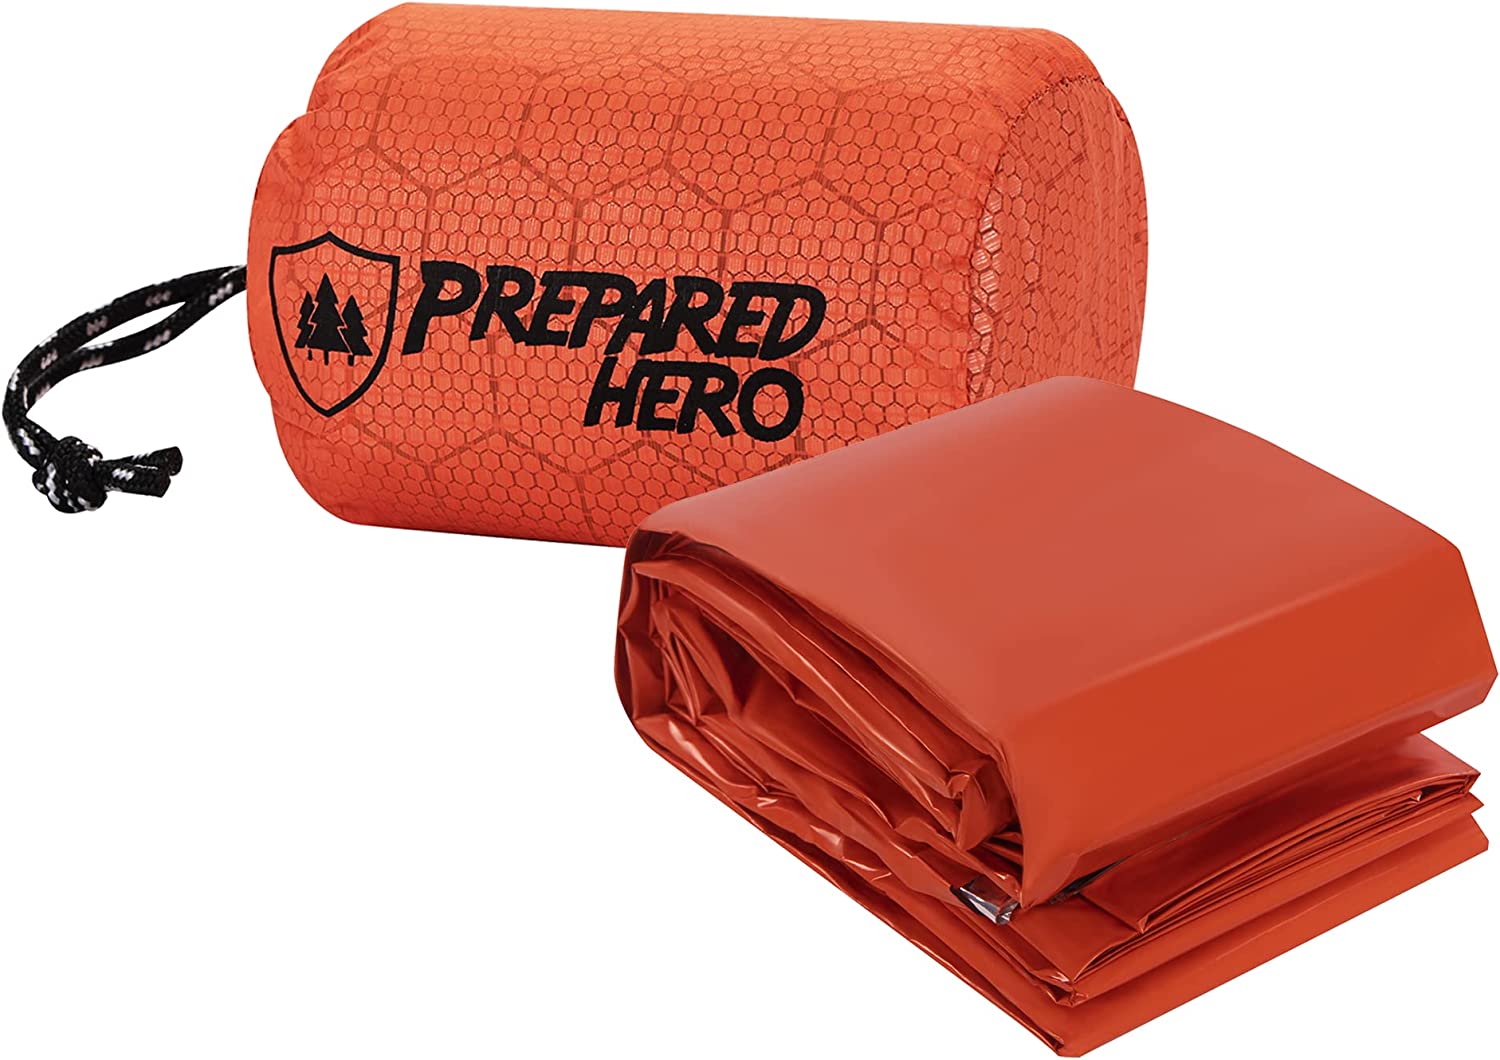 Prepared Hero Hero Survival Bag 1 Pack – Emergency Survival Tool Hero Survival Bag for Camping, PE Sleeping Bag